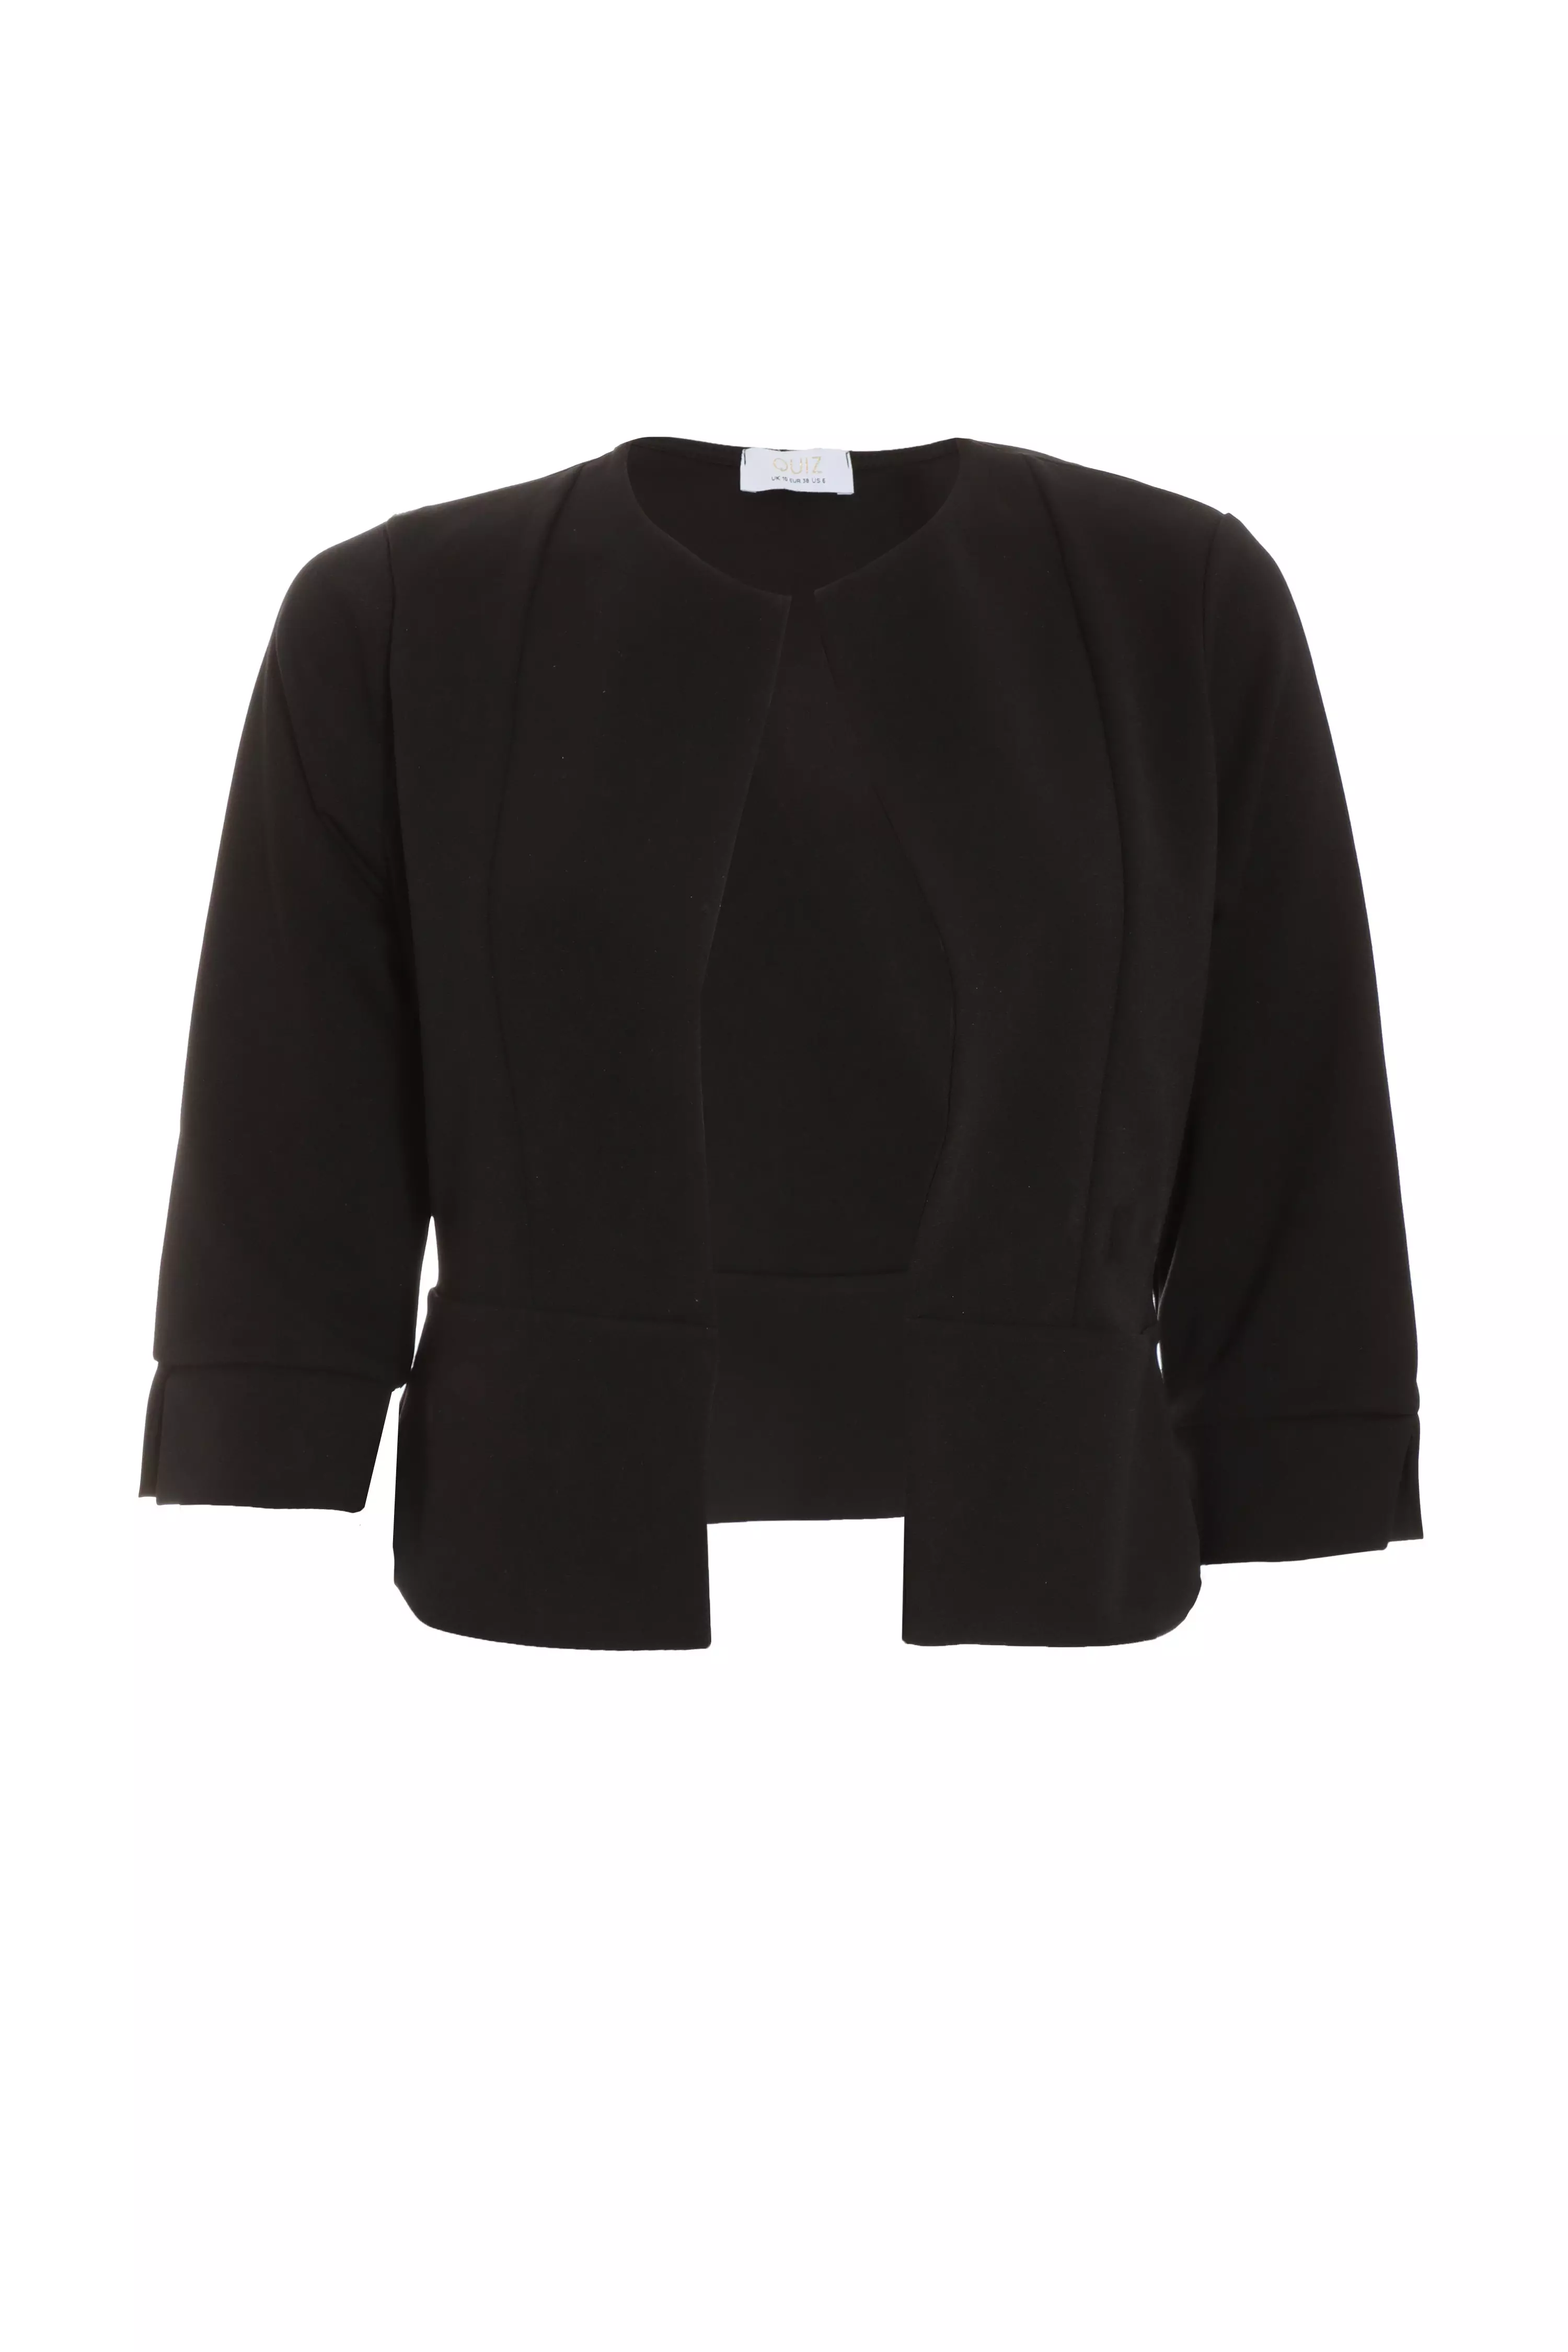 Black Split Sleeve Crop Jacket - QUIZ Clothing